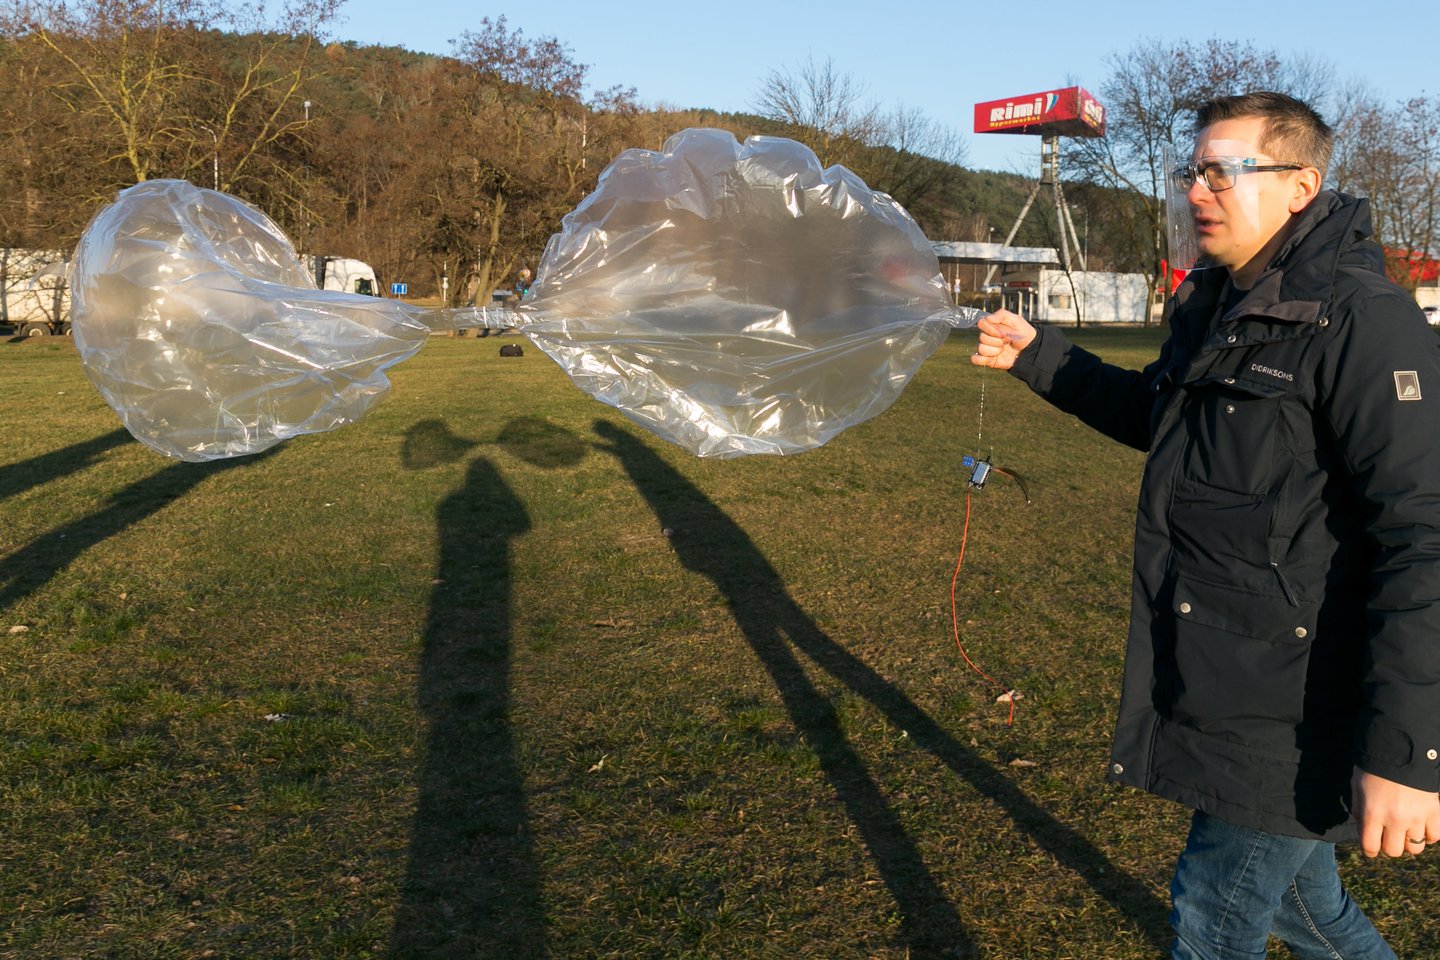  Šaltoką gruodžio rytą iš pievelės šalia Geležinio vilko gatvės sėkmingai pakilo balionų sistema LKB-1, gabenanti „Arduino“ kompiuterį su radijo švyturėliu ir saulės baterijų moduliu.<br> T. Bauro nuotr.